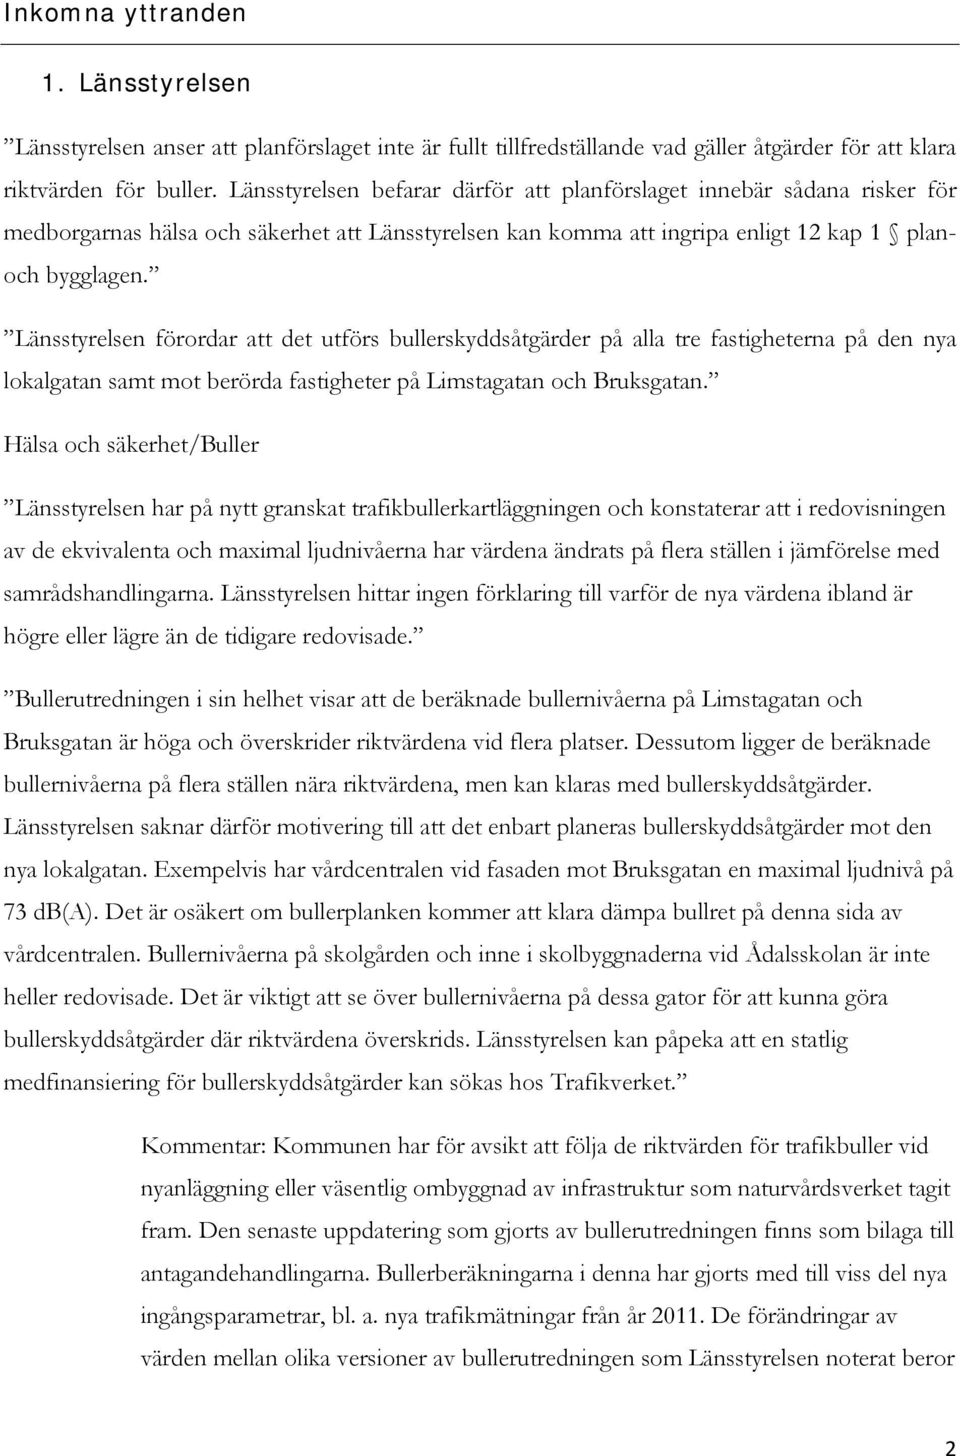 Länsstyrelsen förordar att det utförs bullerskyddsåtgärder på alla tre fastigheterna på den nya lokalgatan samt mot berörda fastigheter på Limstagatan och Bruksgatan.